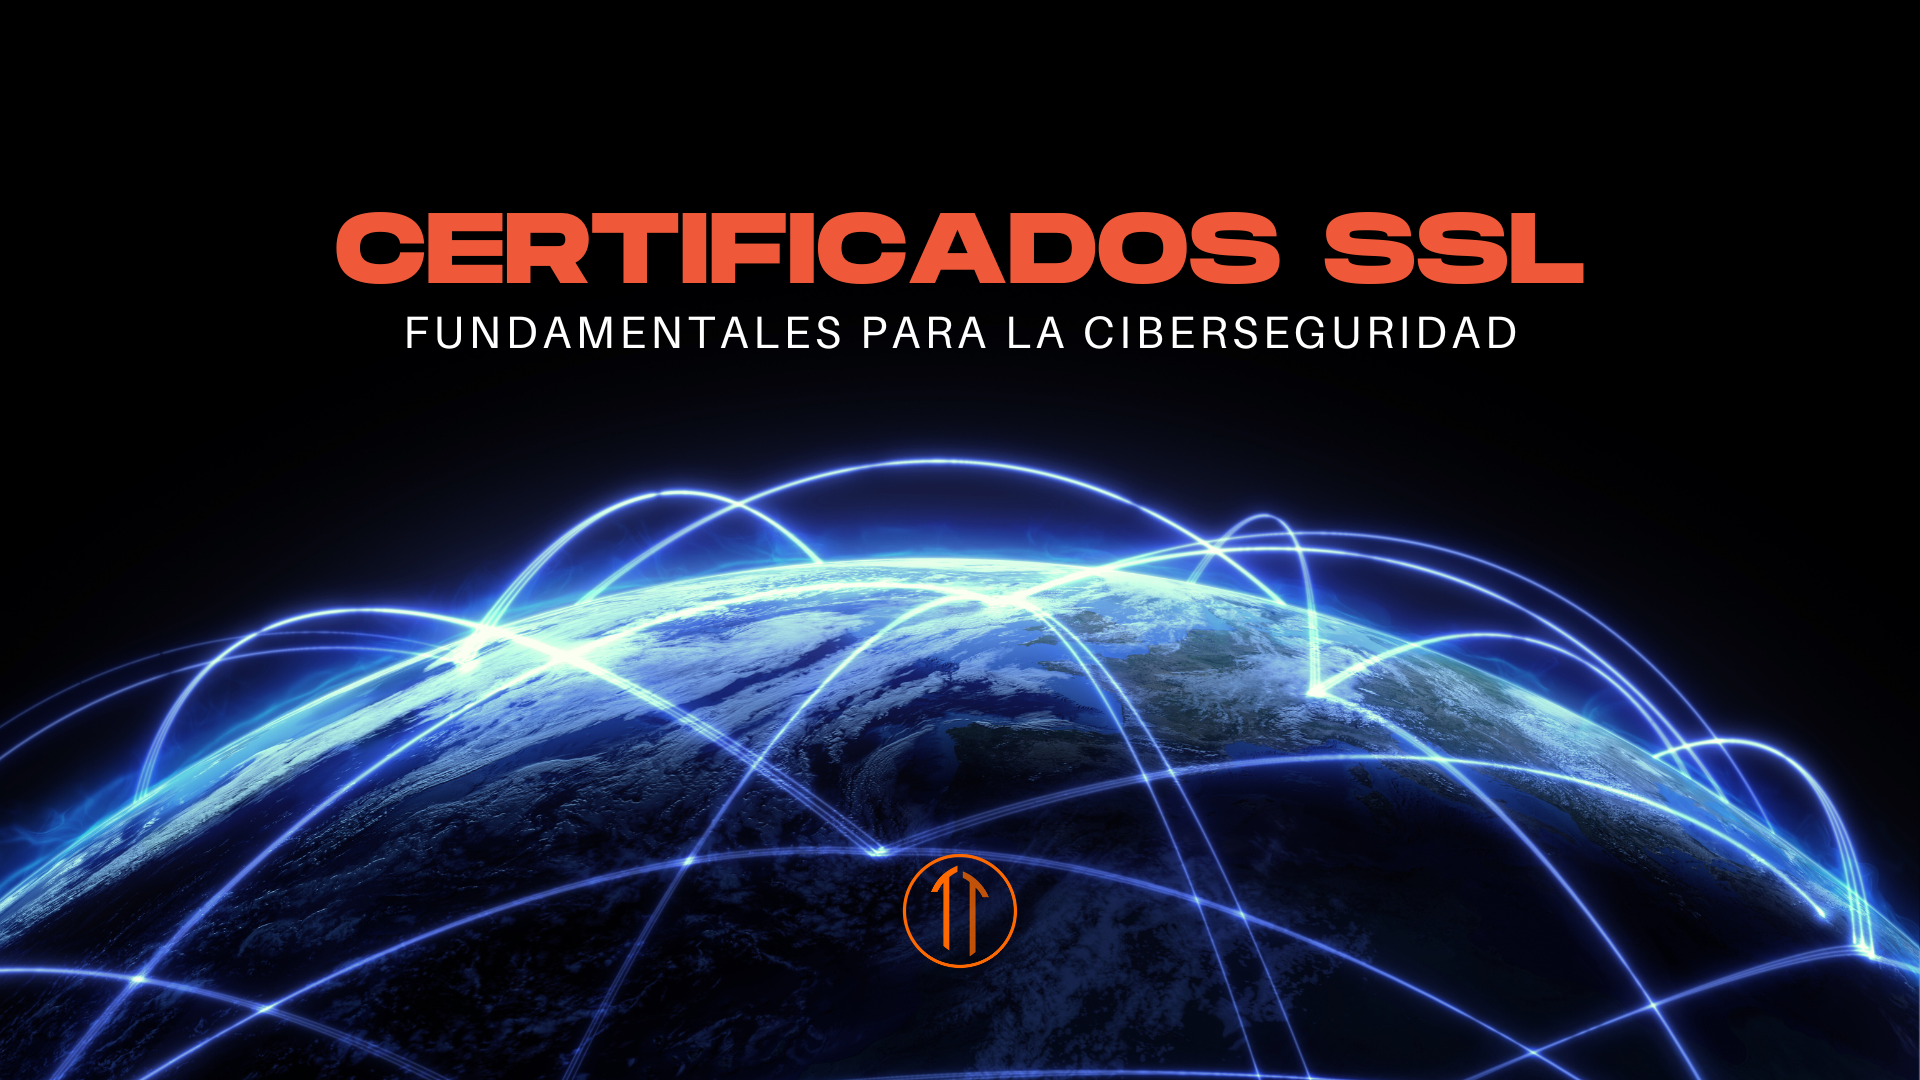 El valor fundamental de los certificados SSL en la ciberseguridad